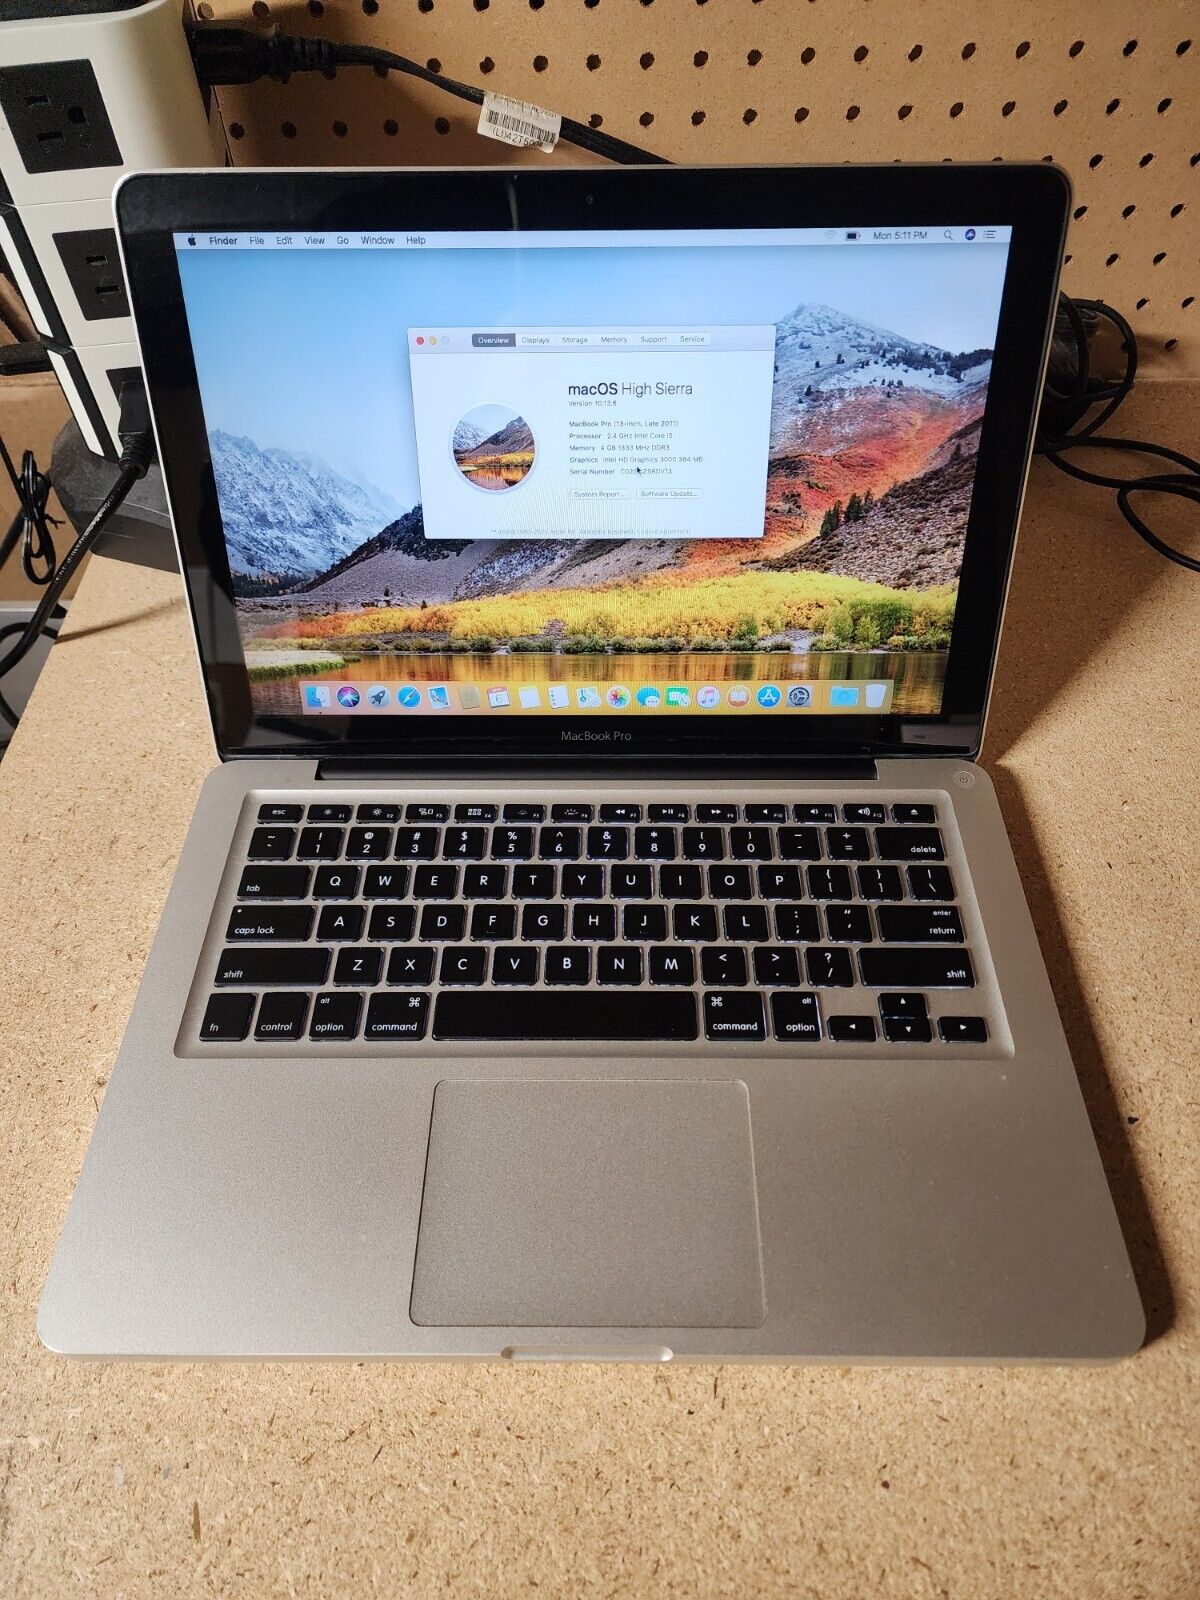 Apple MacBook Pro A1278 2011 Intel i5 2.4GHz 4GB RAM 500GB HDD High Sierra